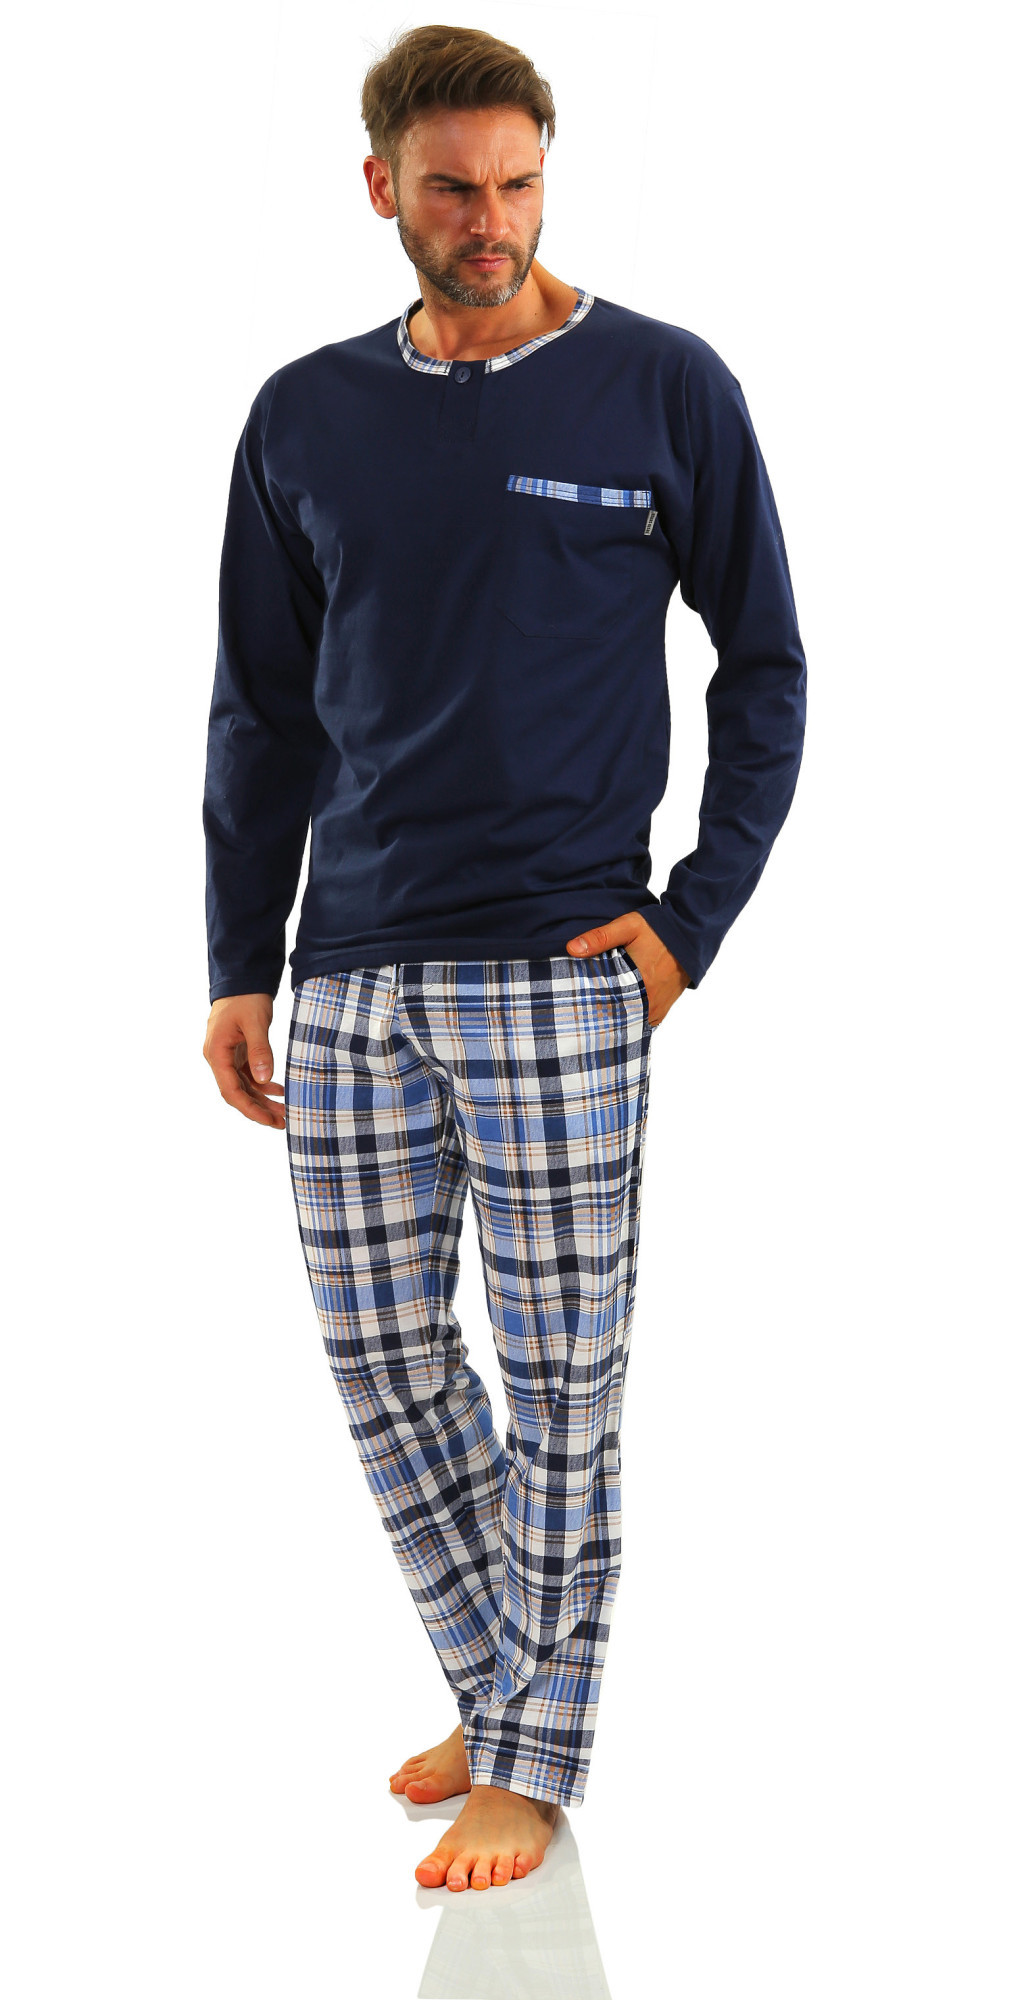 Sesto Senso Pánské pyžamo dlouhé Jasiek 2188/17 námořnická modrá XL